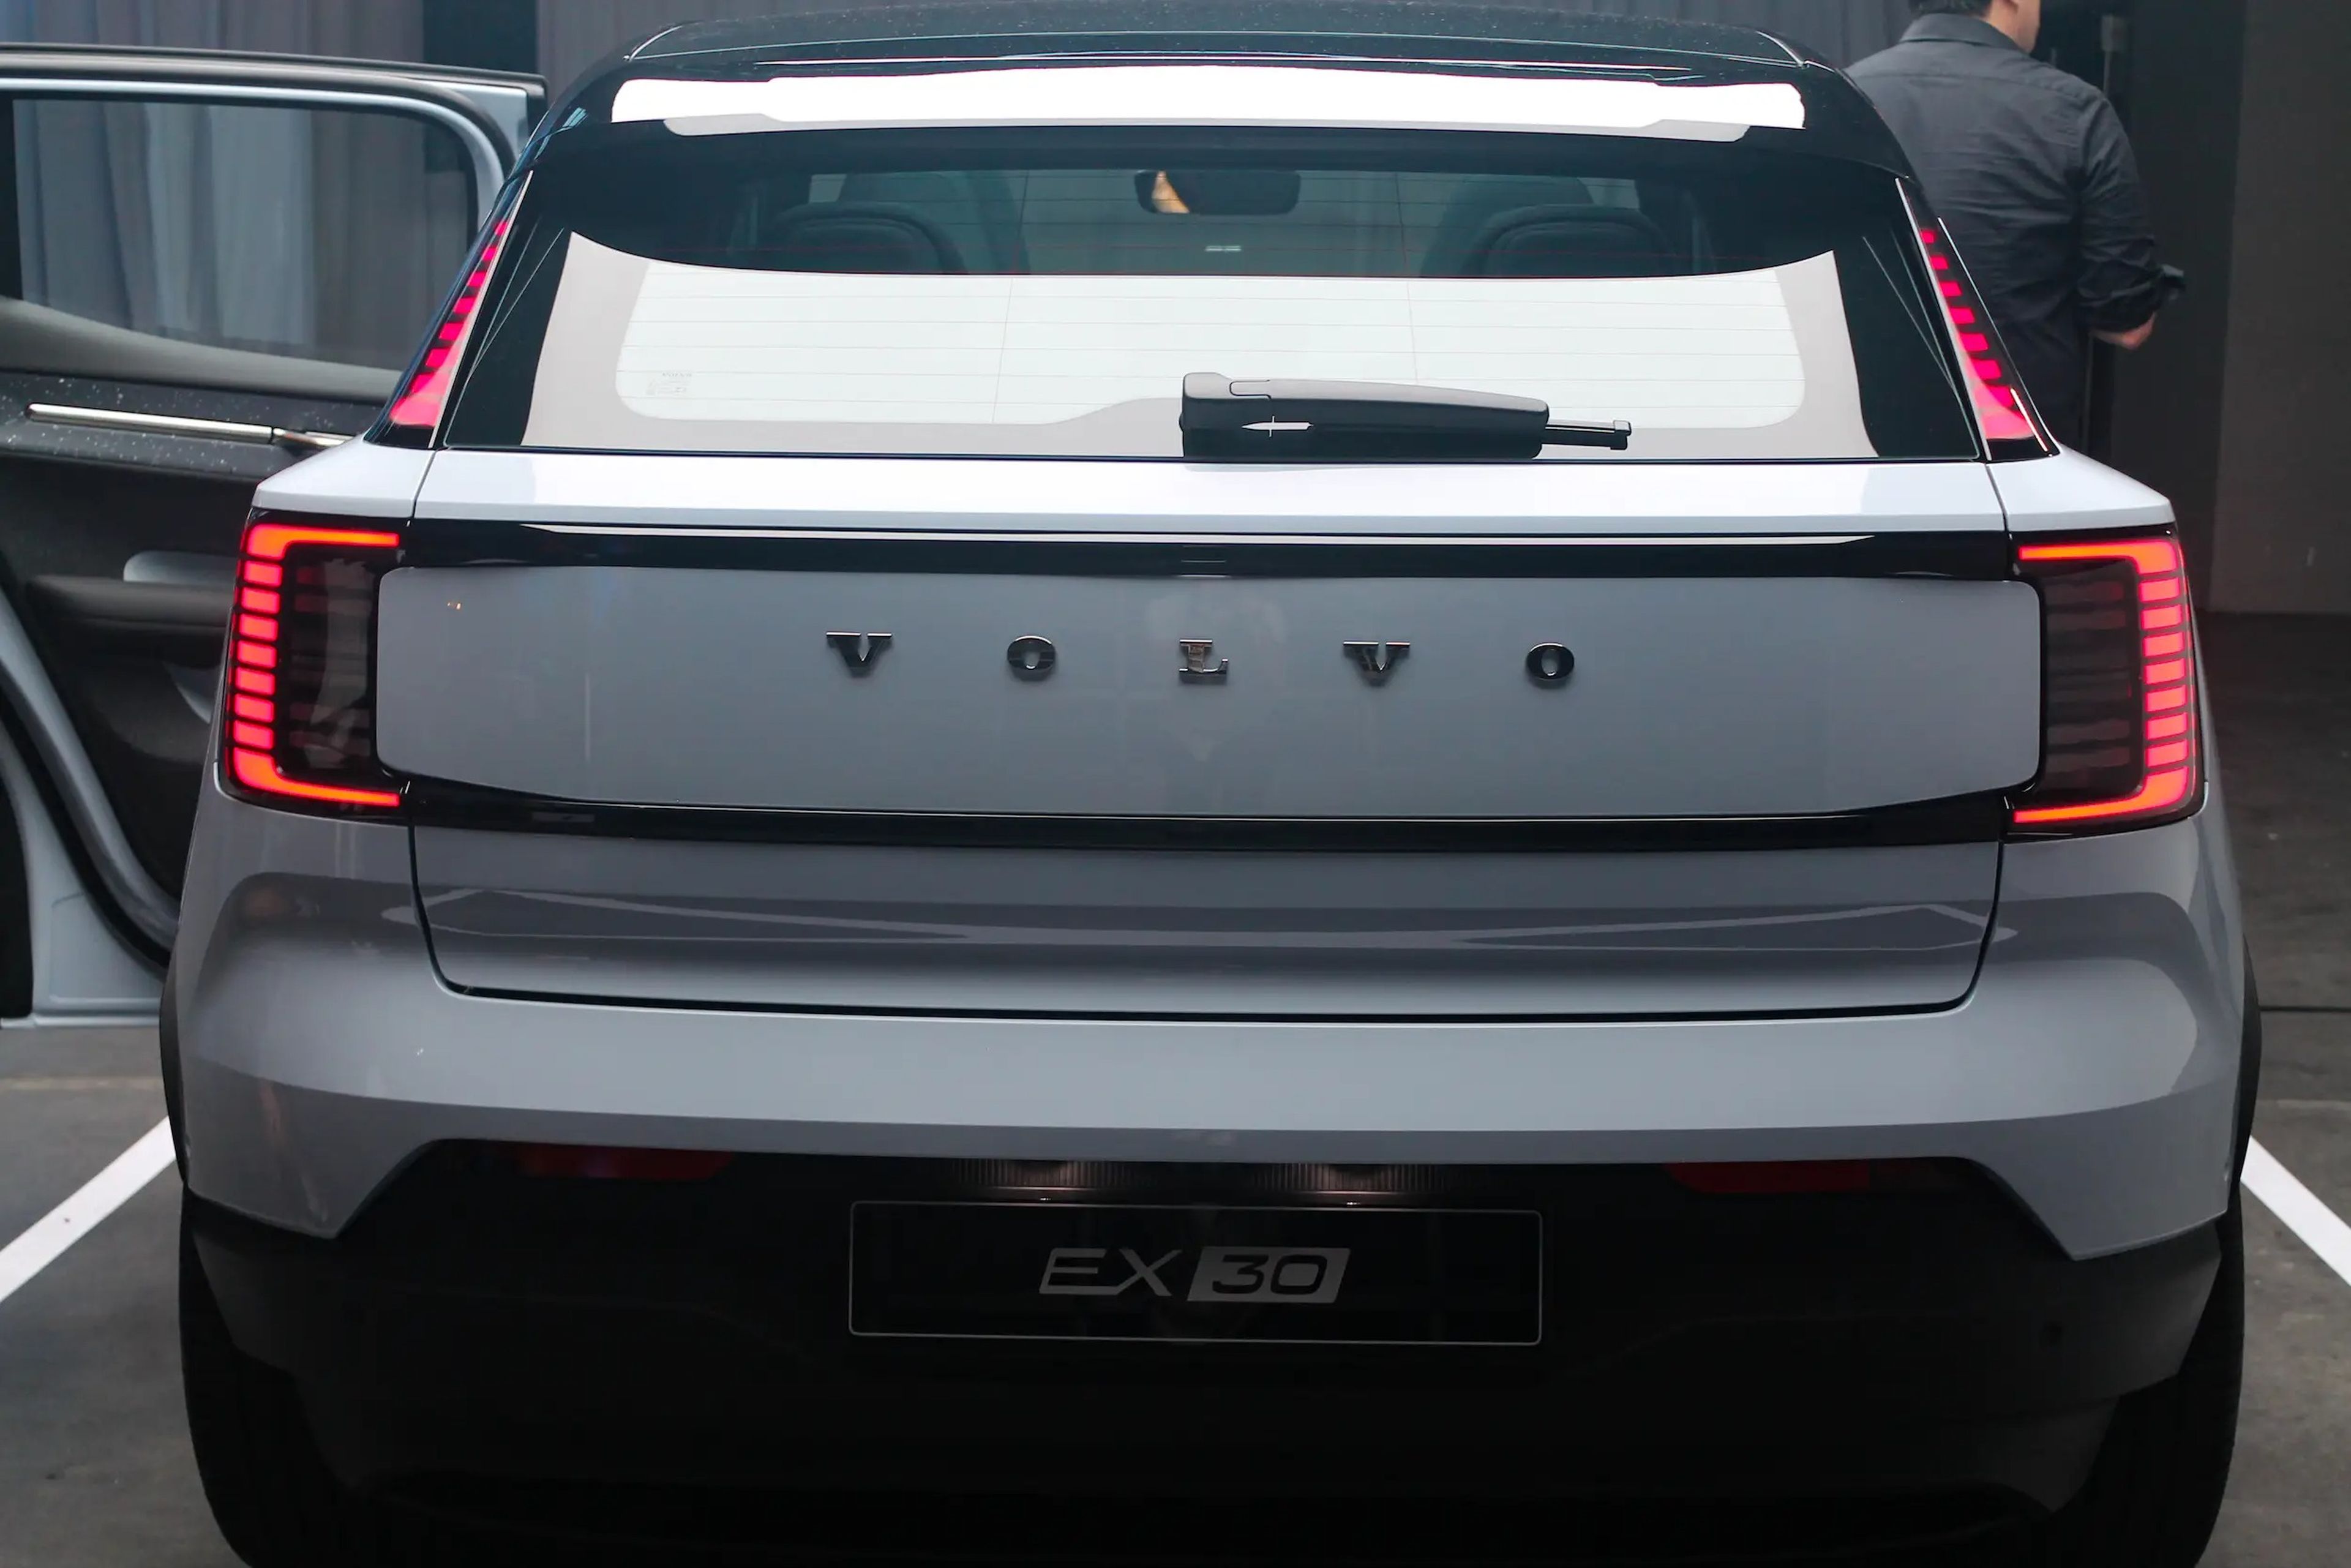 La parte trasera del Volvo EX30, con luces de freno de aspecto elegante y el logotipo de Volvo en el centro.